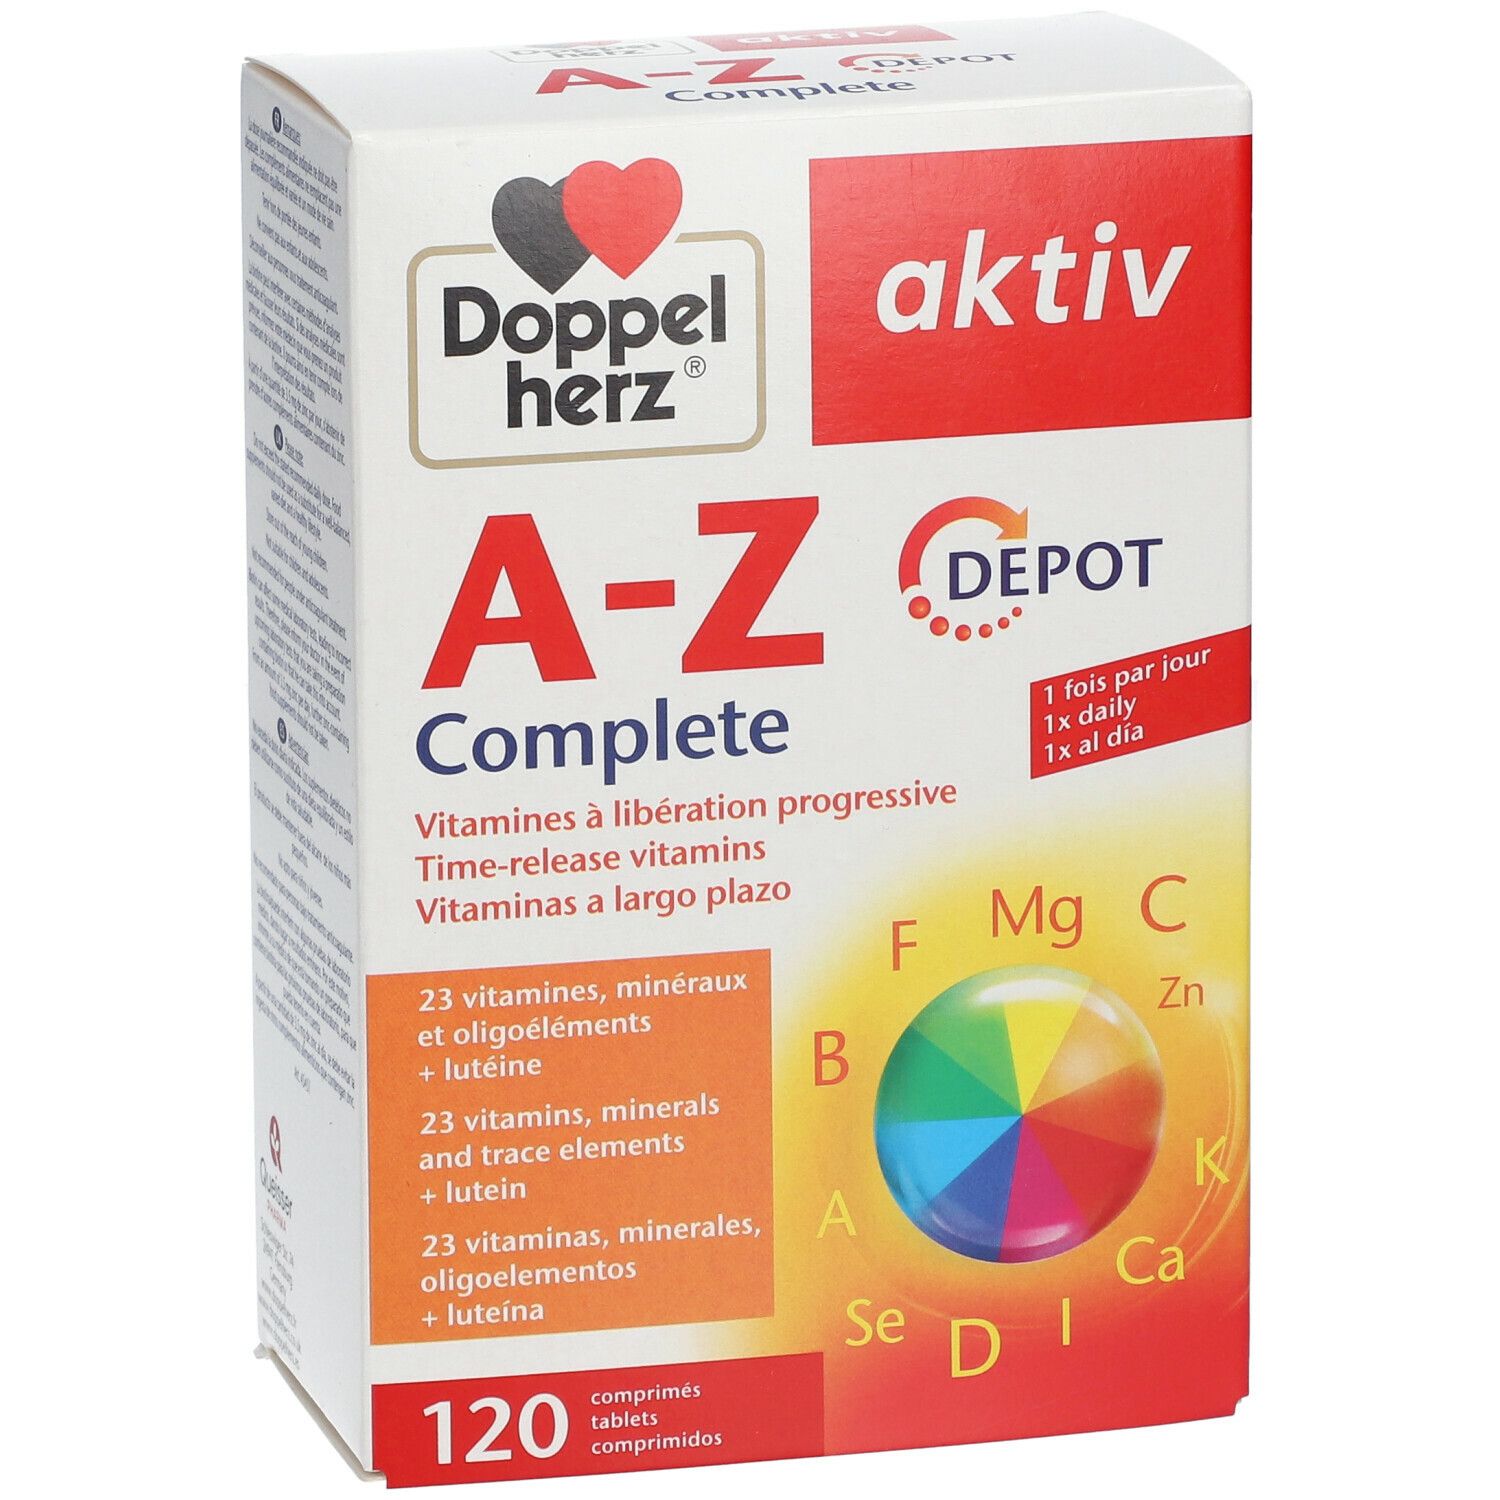 Doppelherz® aktiv A-Z Complete DEPOT